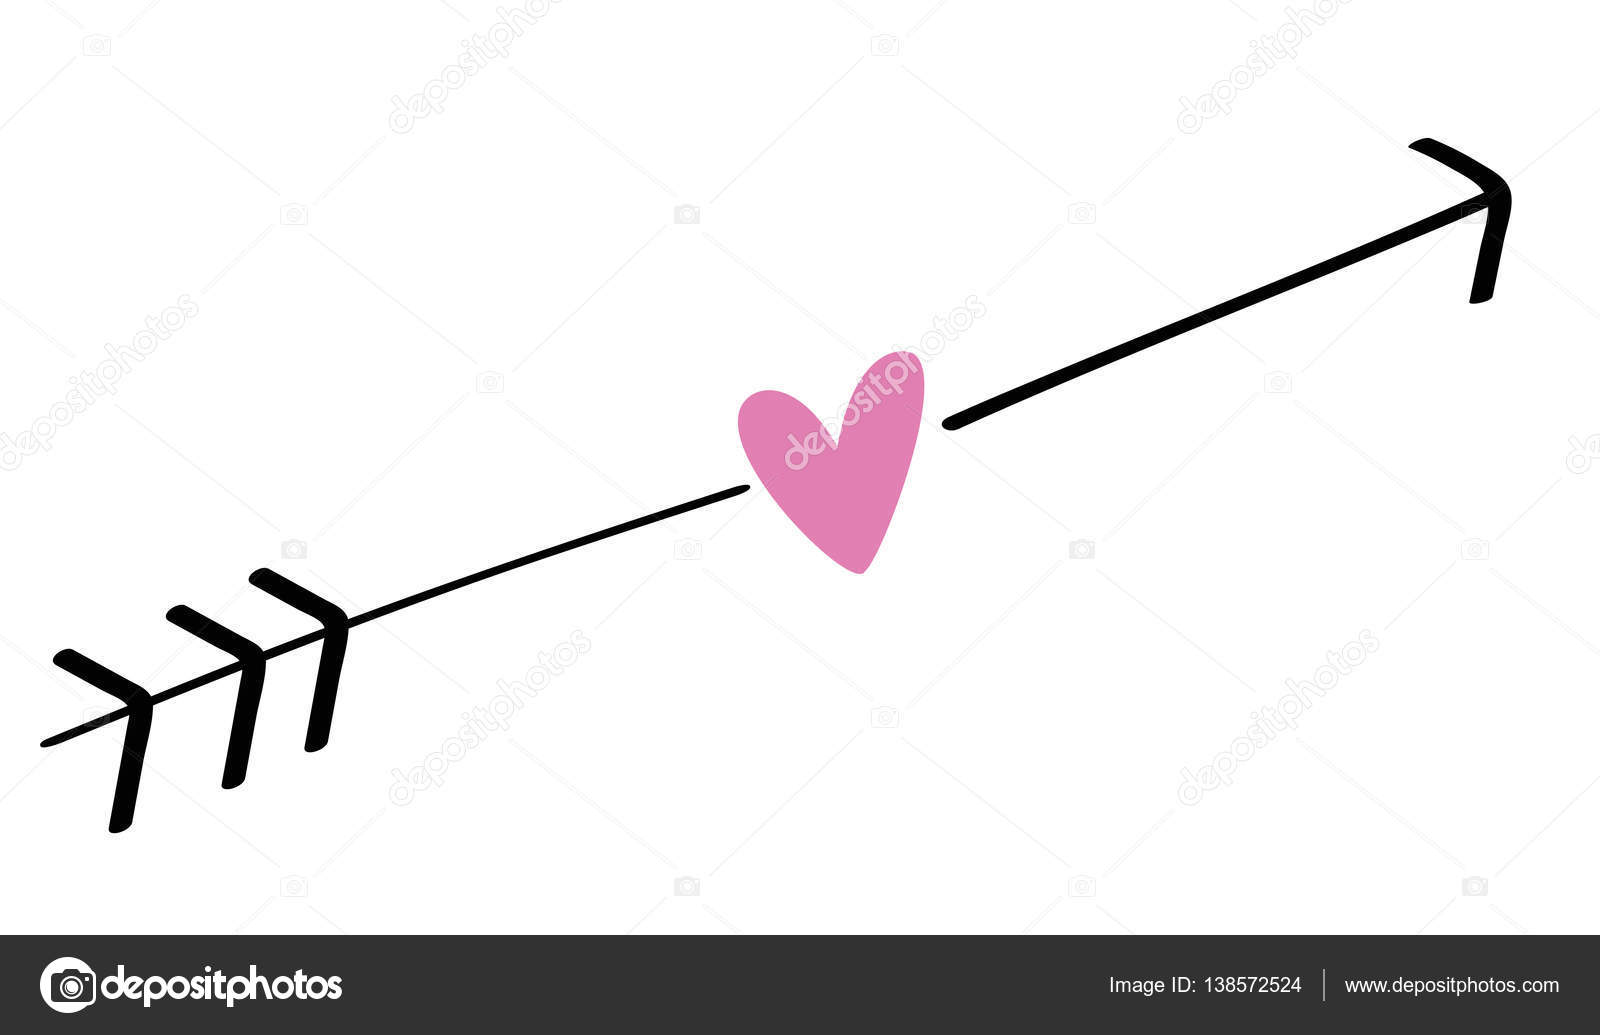 Download Love Heart Arrow ⬇ Vector Image by © keeweegirl | Vector Stock 138572524